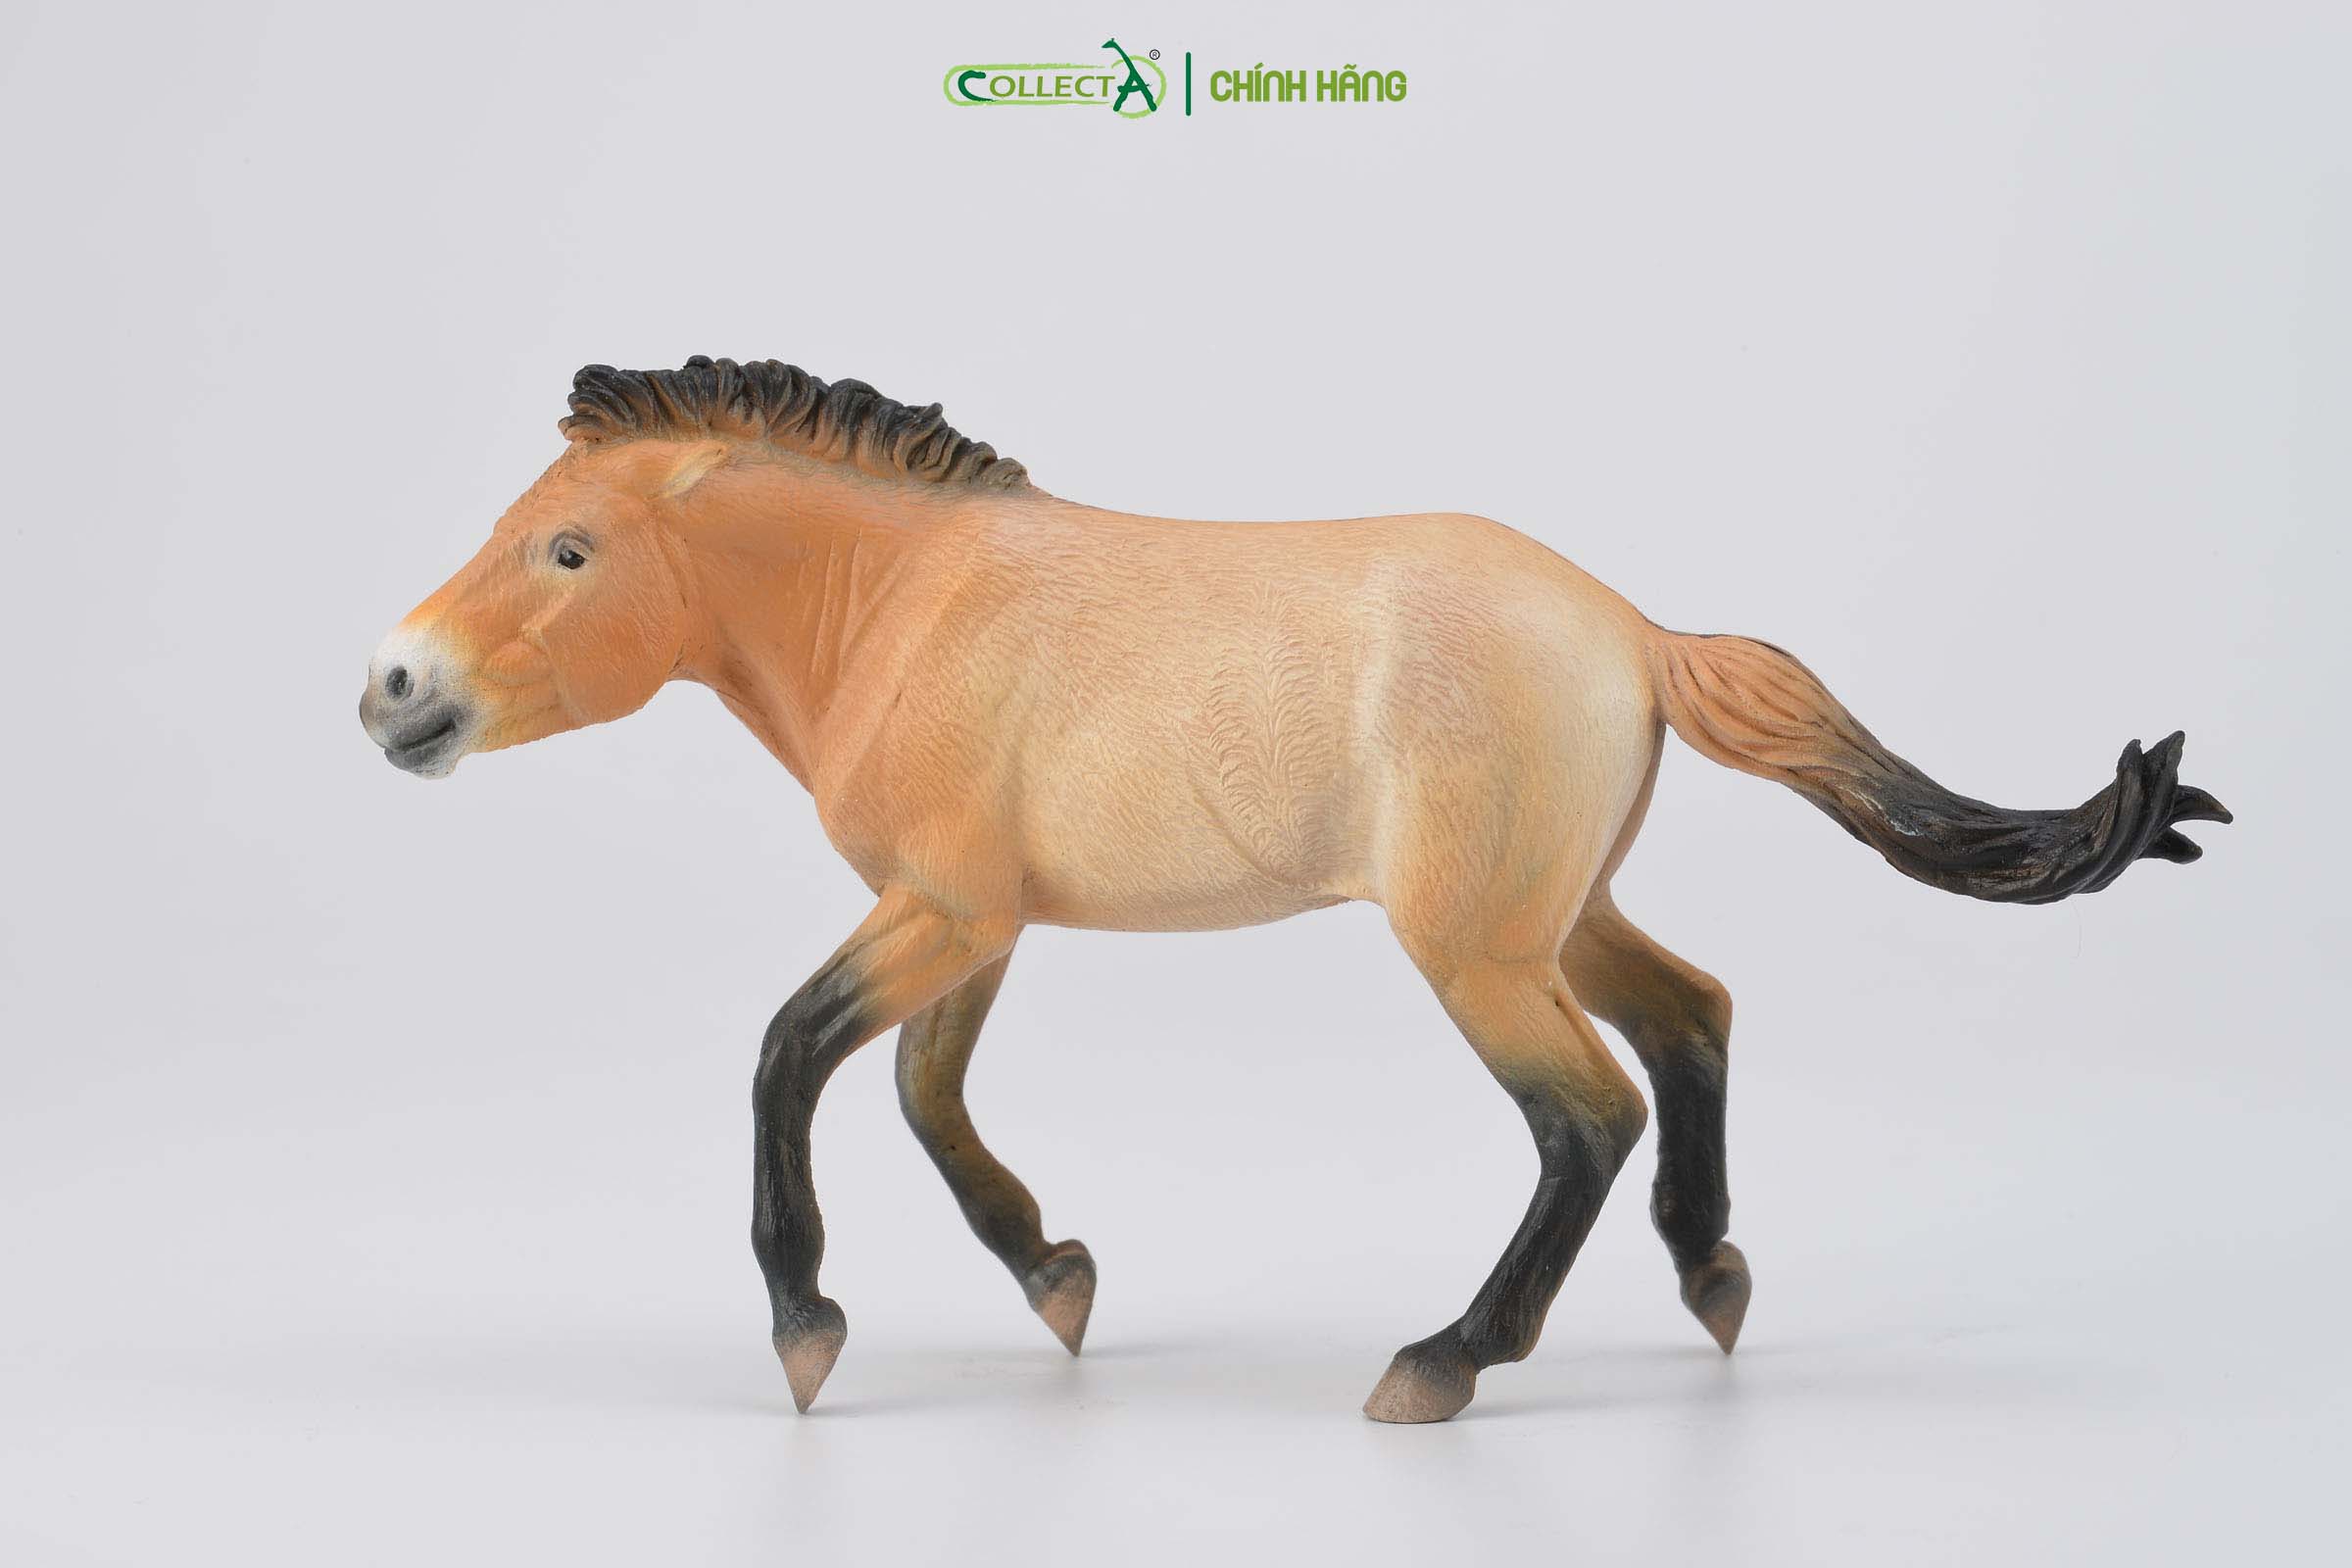 Mô hình thu nhỏ: Ngựa Hoang Mông Cổ - Przewalski Stallion, hiệu: CollectA, mã HS 9651260[88602] -  Chất liệu an toàn cho trẻ - Hàng chính hãng